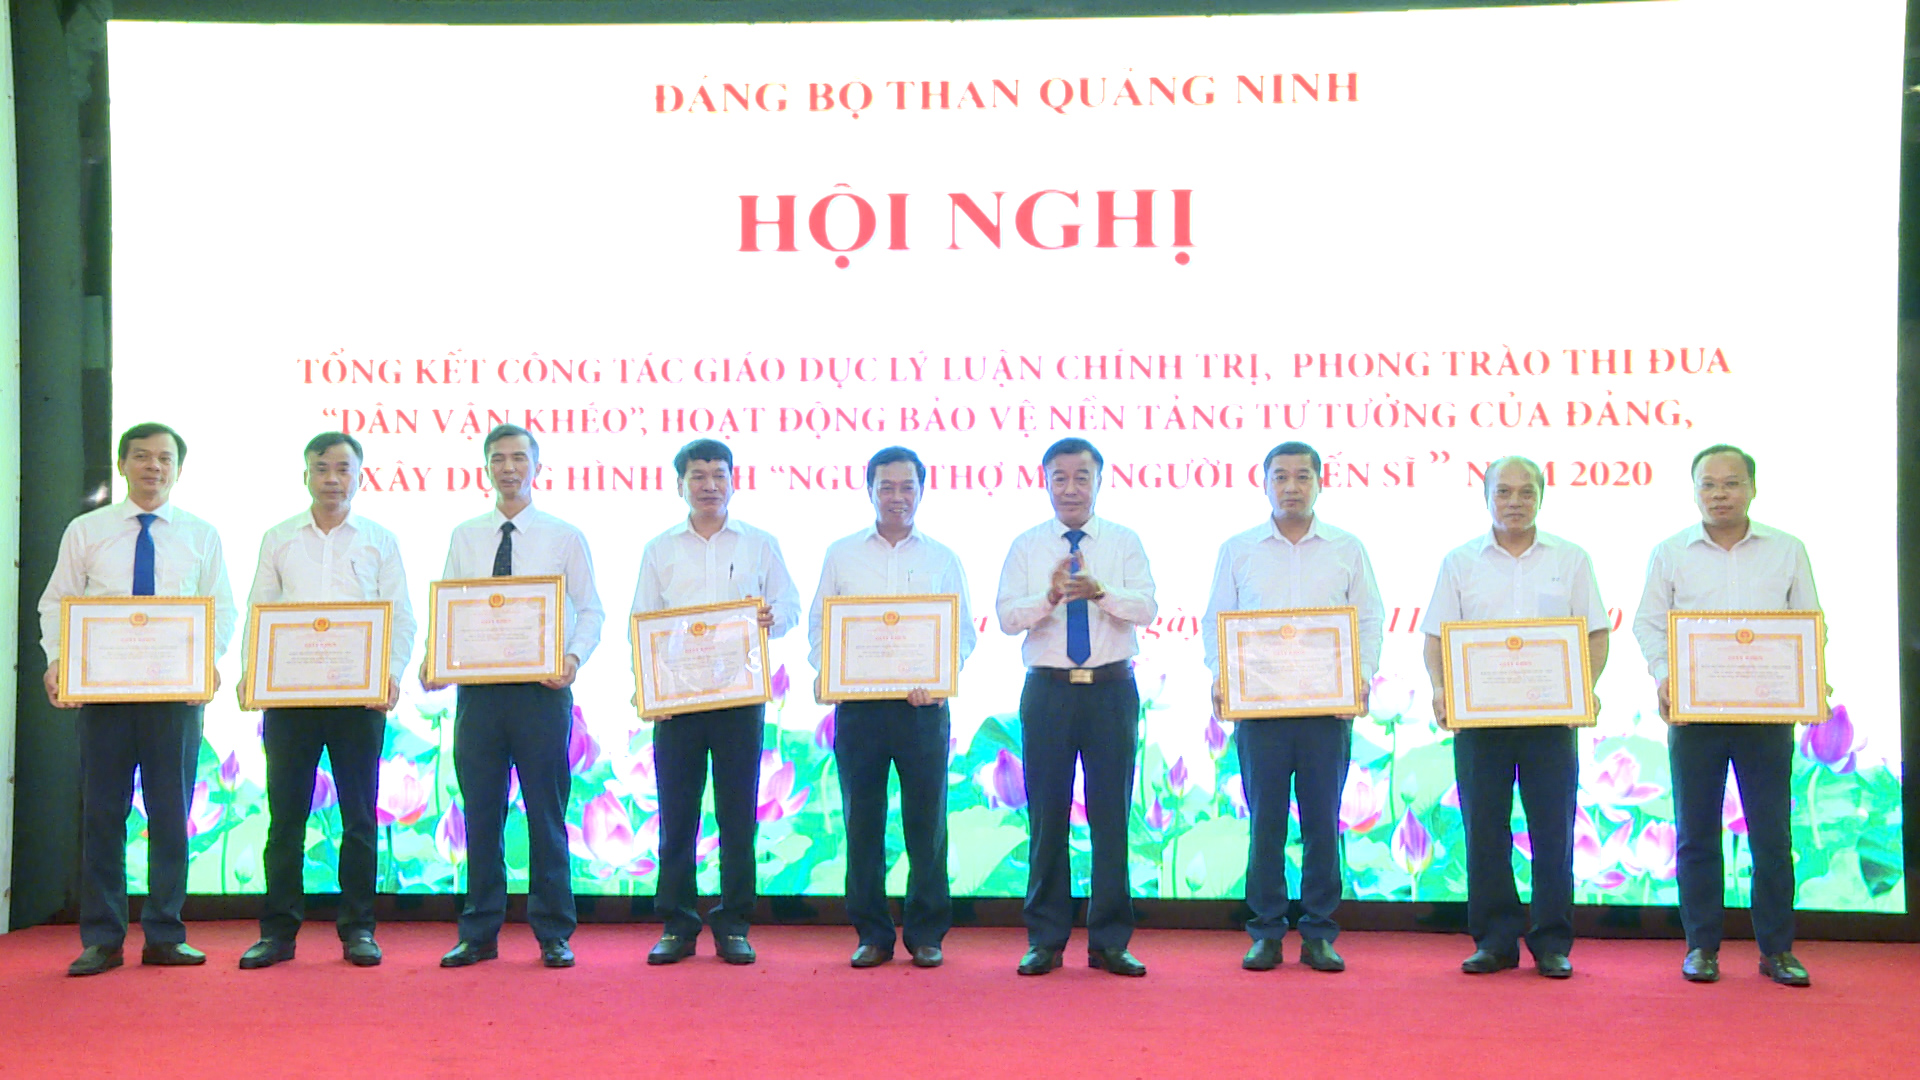 Đảng ủy Than Quảng Ninh khen thưởng các tập thể đạt thành tích xuất sắc trong hoạt động bảo vệ nền tảng tư tưởng của Đảng năm 2020 c ạ